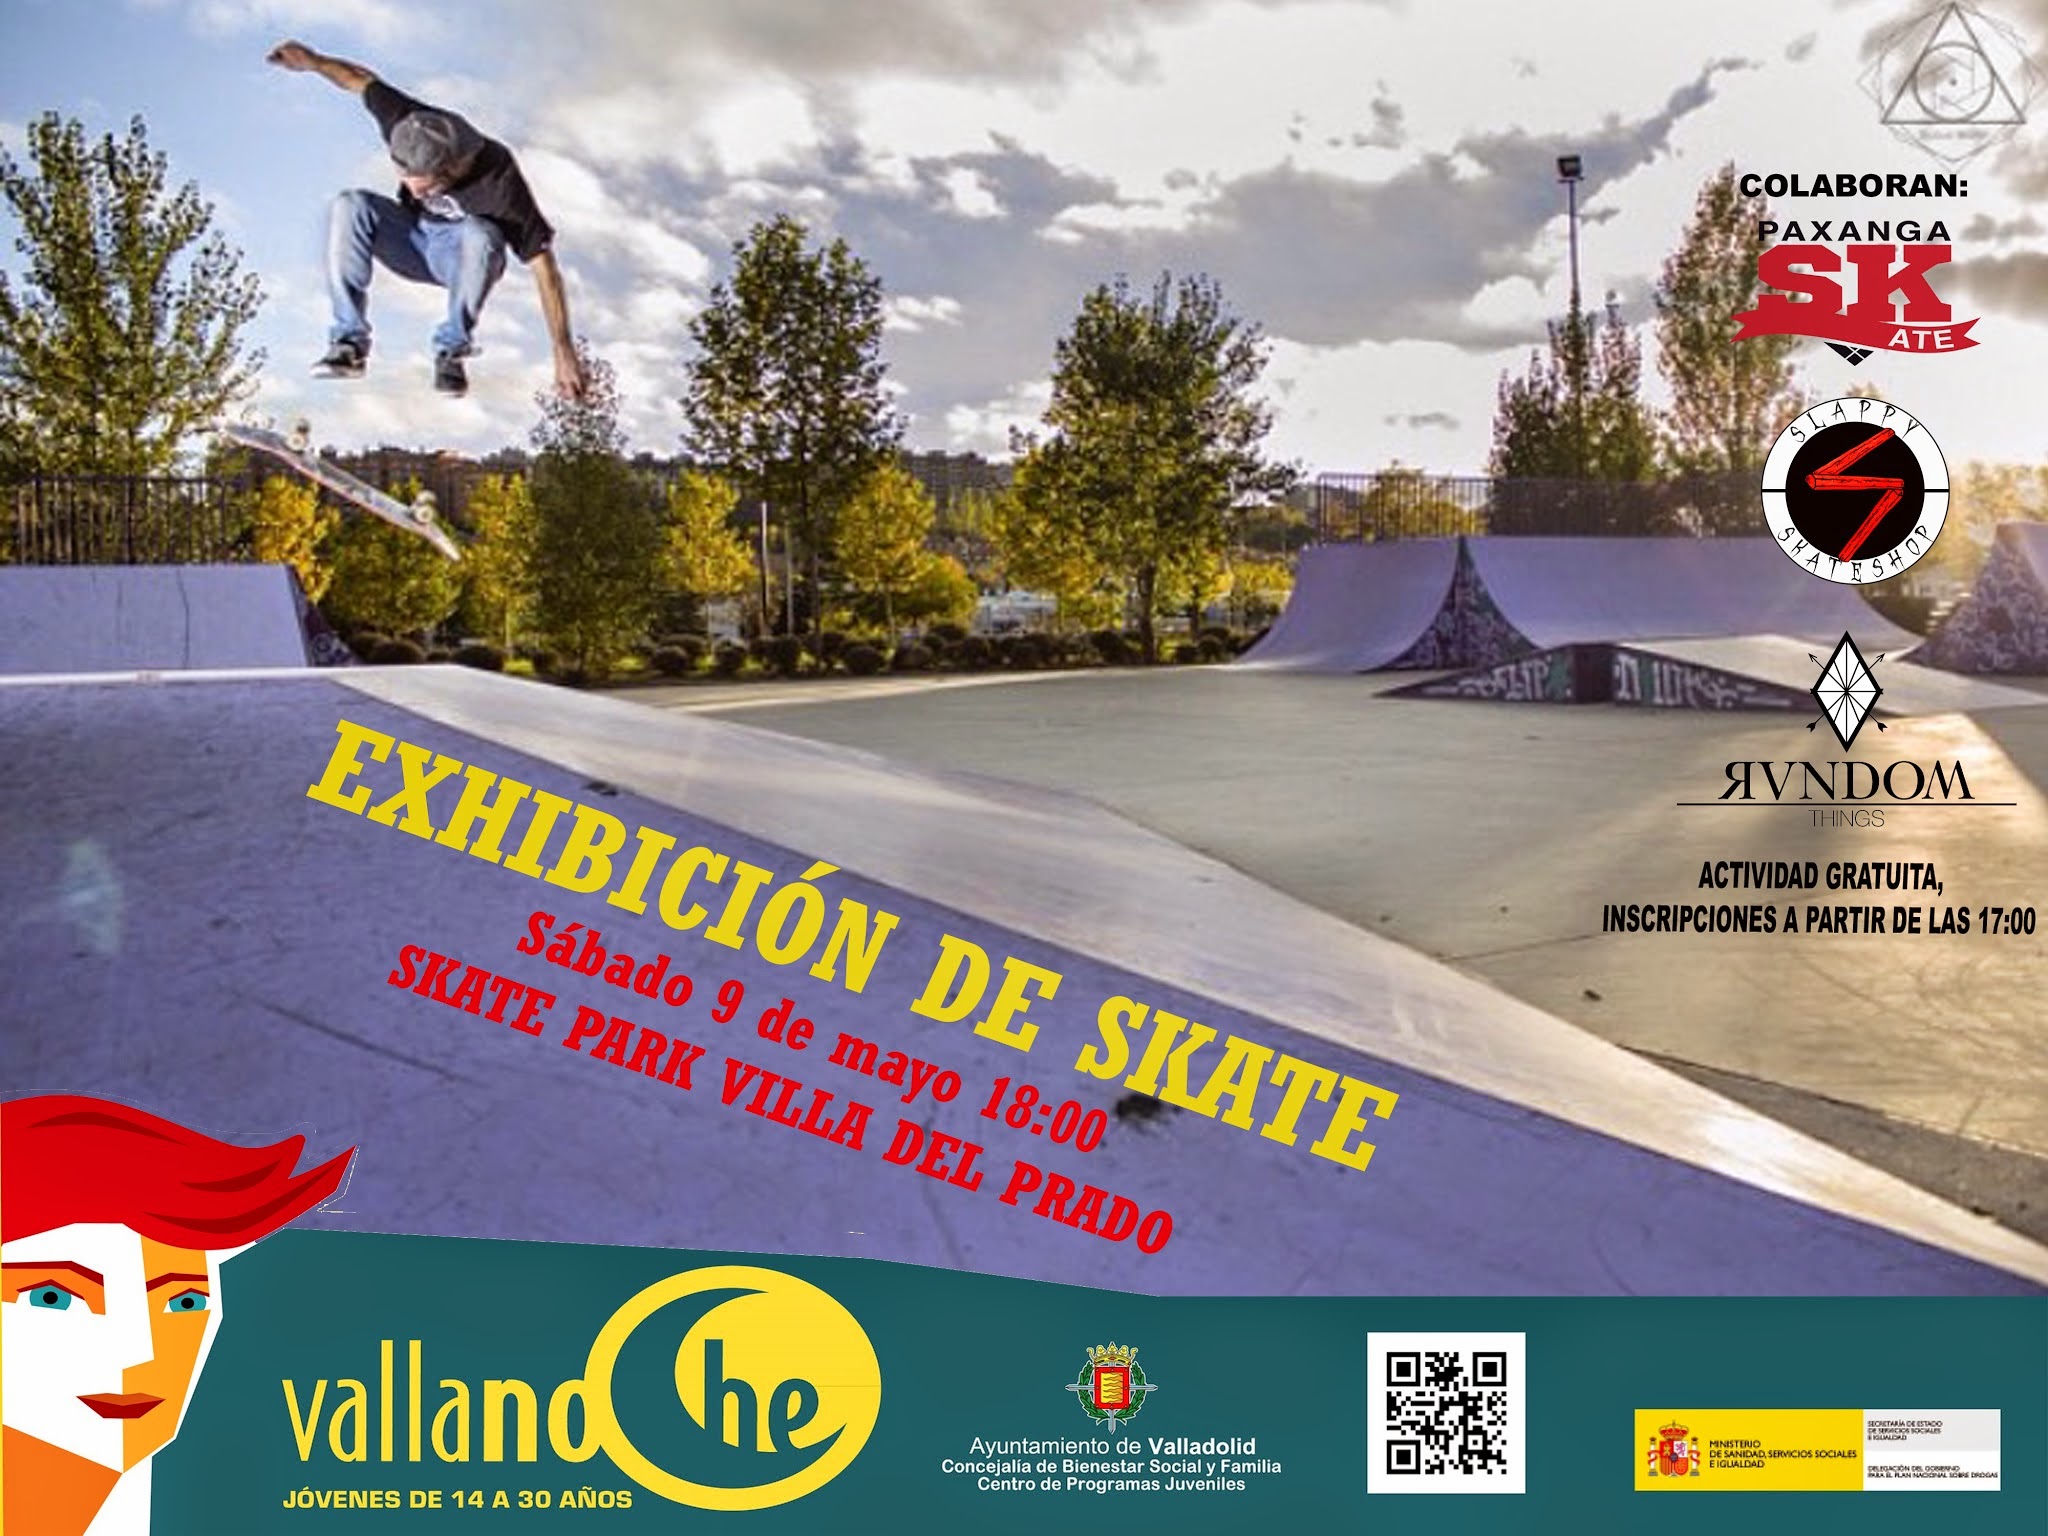 Skate en Vallanoche el 9 de mayo